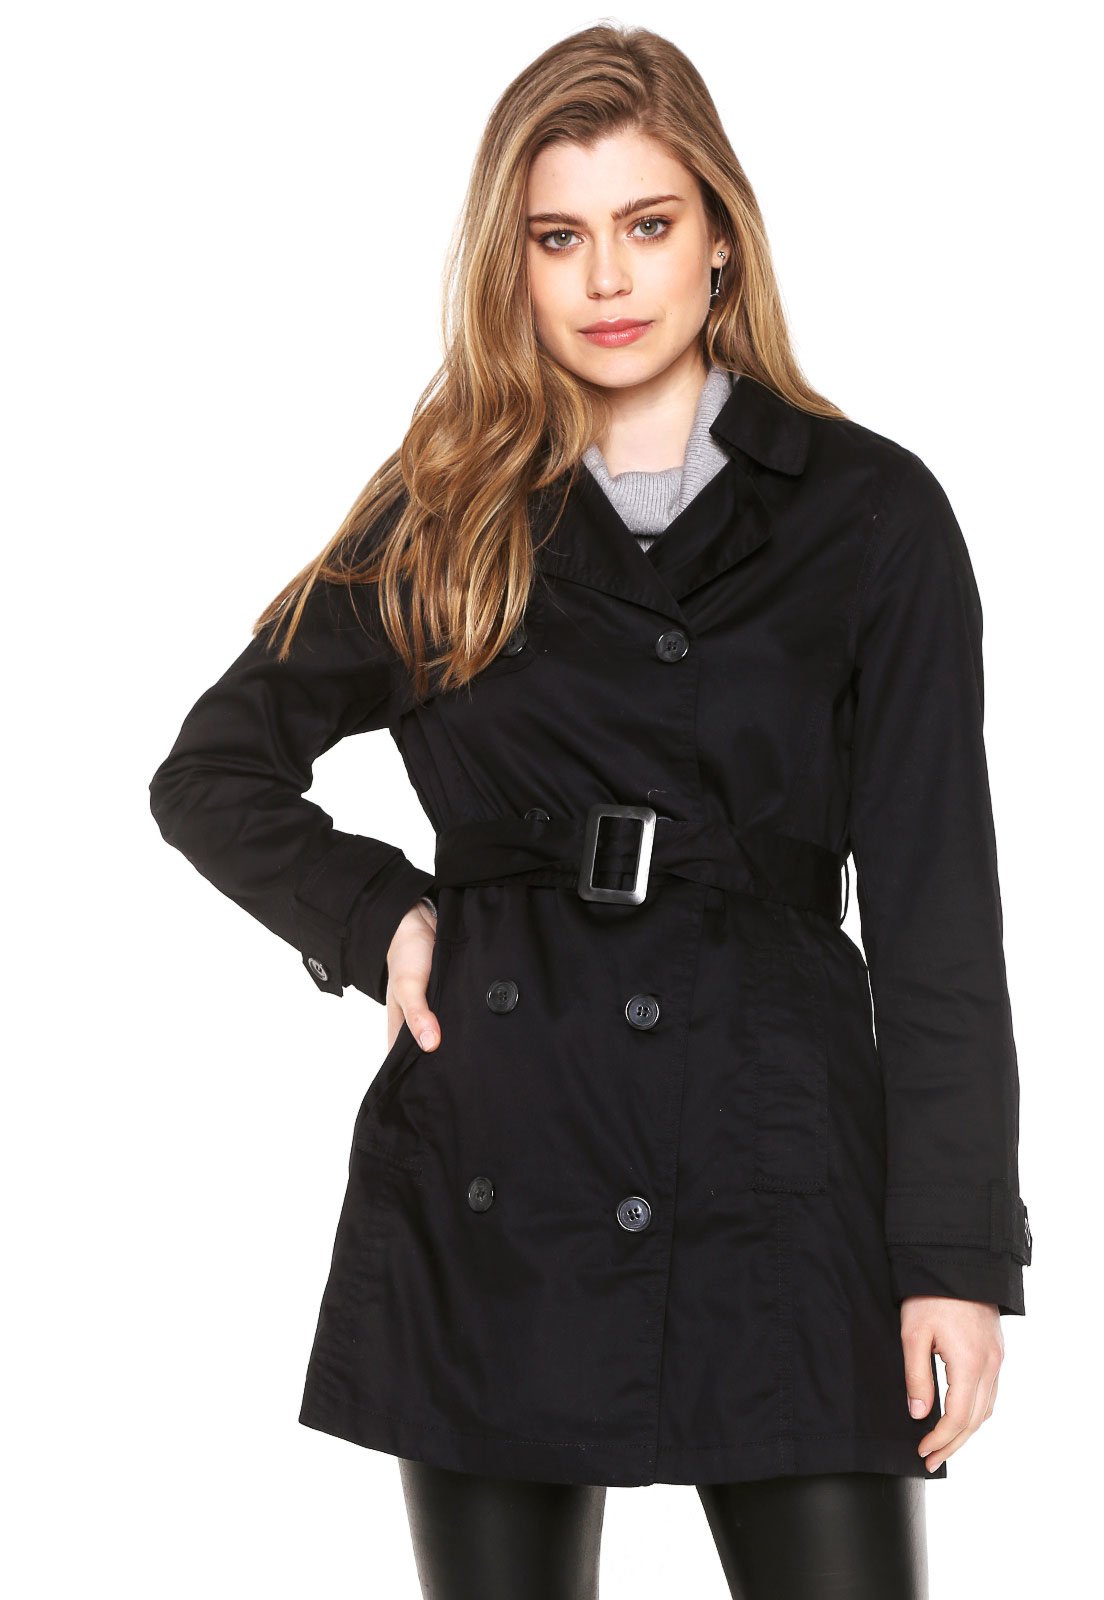 casaco feminino trench coat